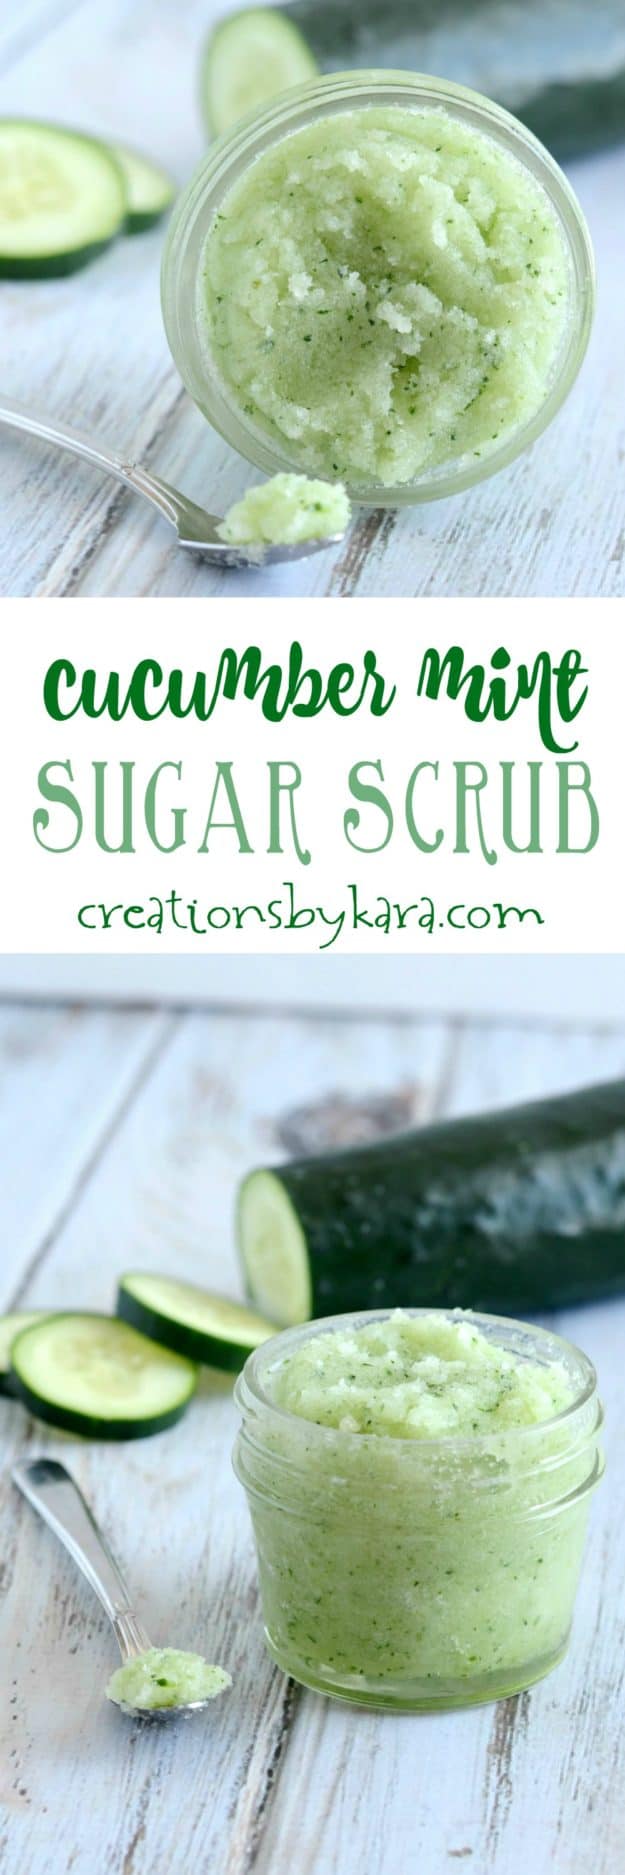 cucumber mint sugar scrub recipe collage